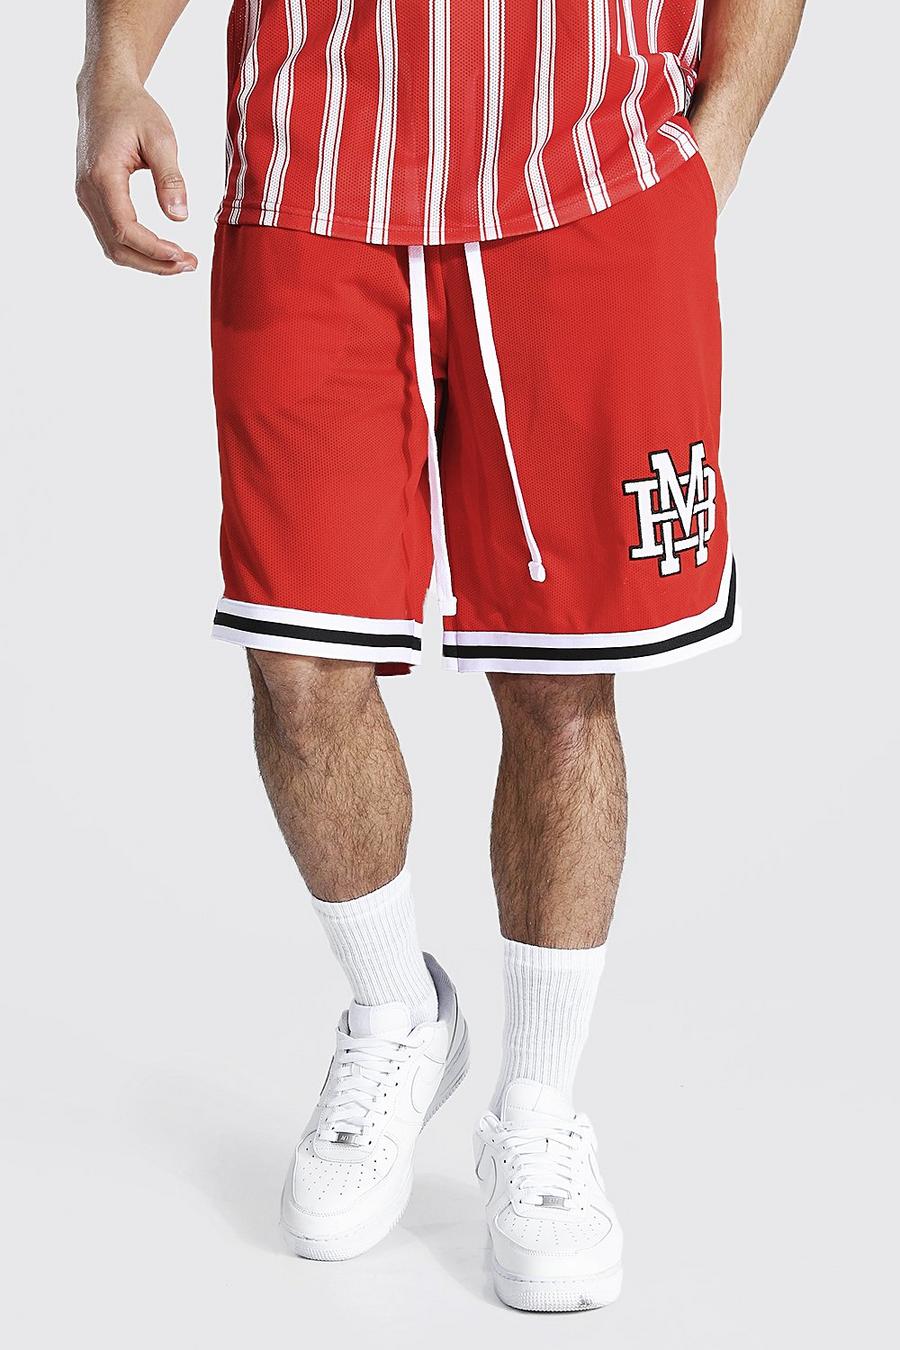 אדום שורט כדורסל מבד נושם בסגנון נבחרת ספורט עם אפליקציית Man image number 1